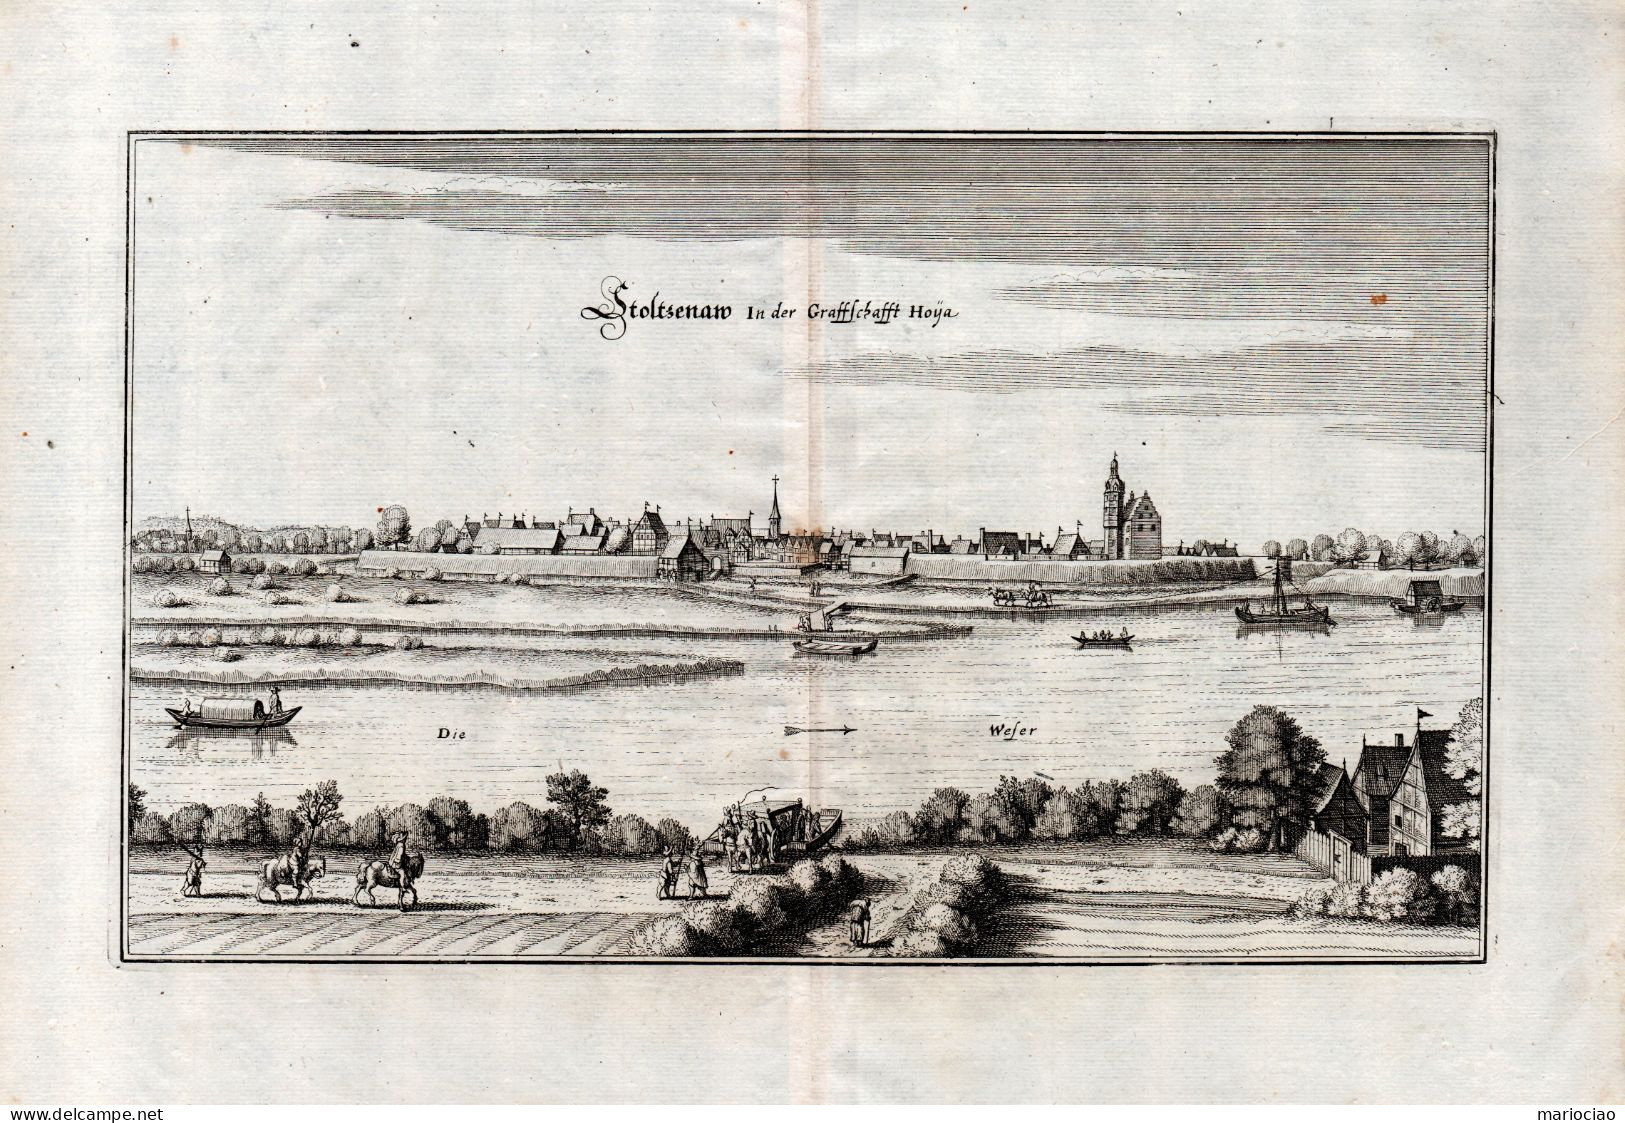 ST-DE STOLZENAU Im Landkreis Nienburg-Weser In Niedersachsen 1650 Matthaeus Merian Kupferstich - Stiche & Gravuren